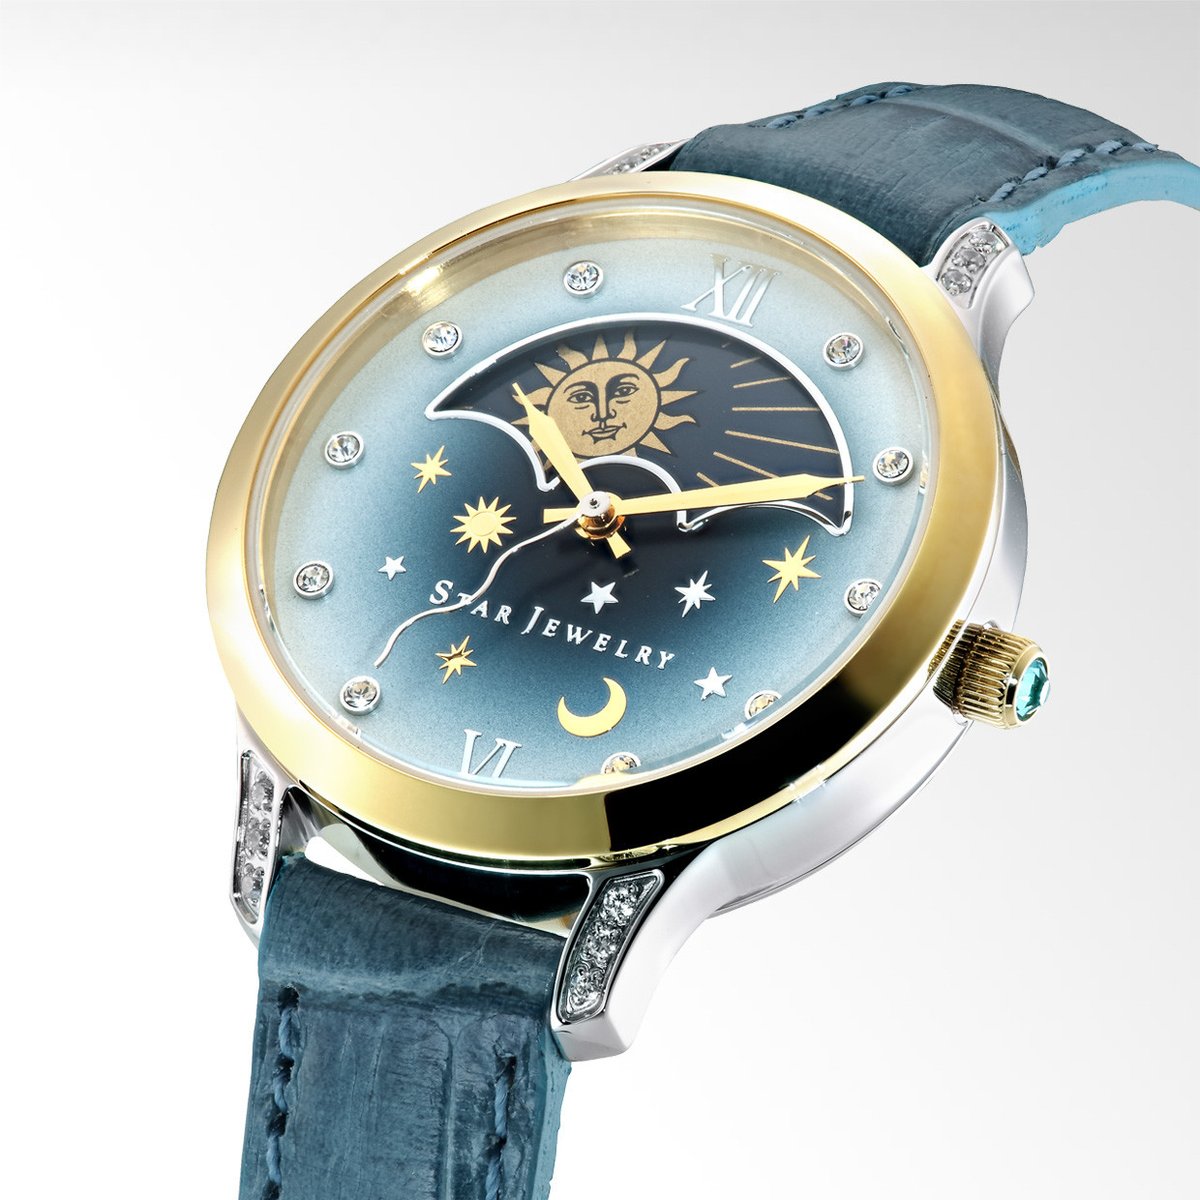 腕時計 スタージュエリー starjewelry ムーンフェイズ - 腕時計(アナログ)